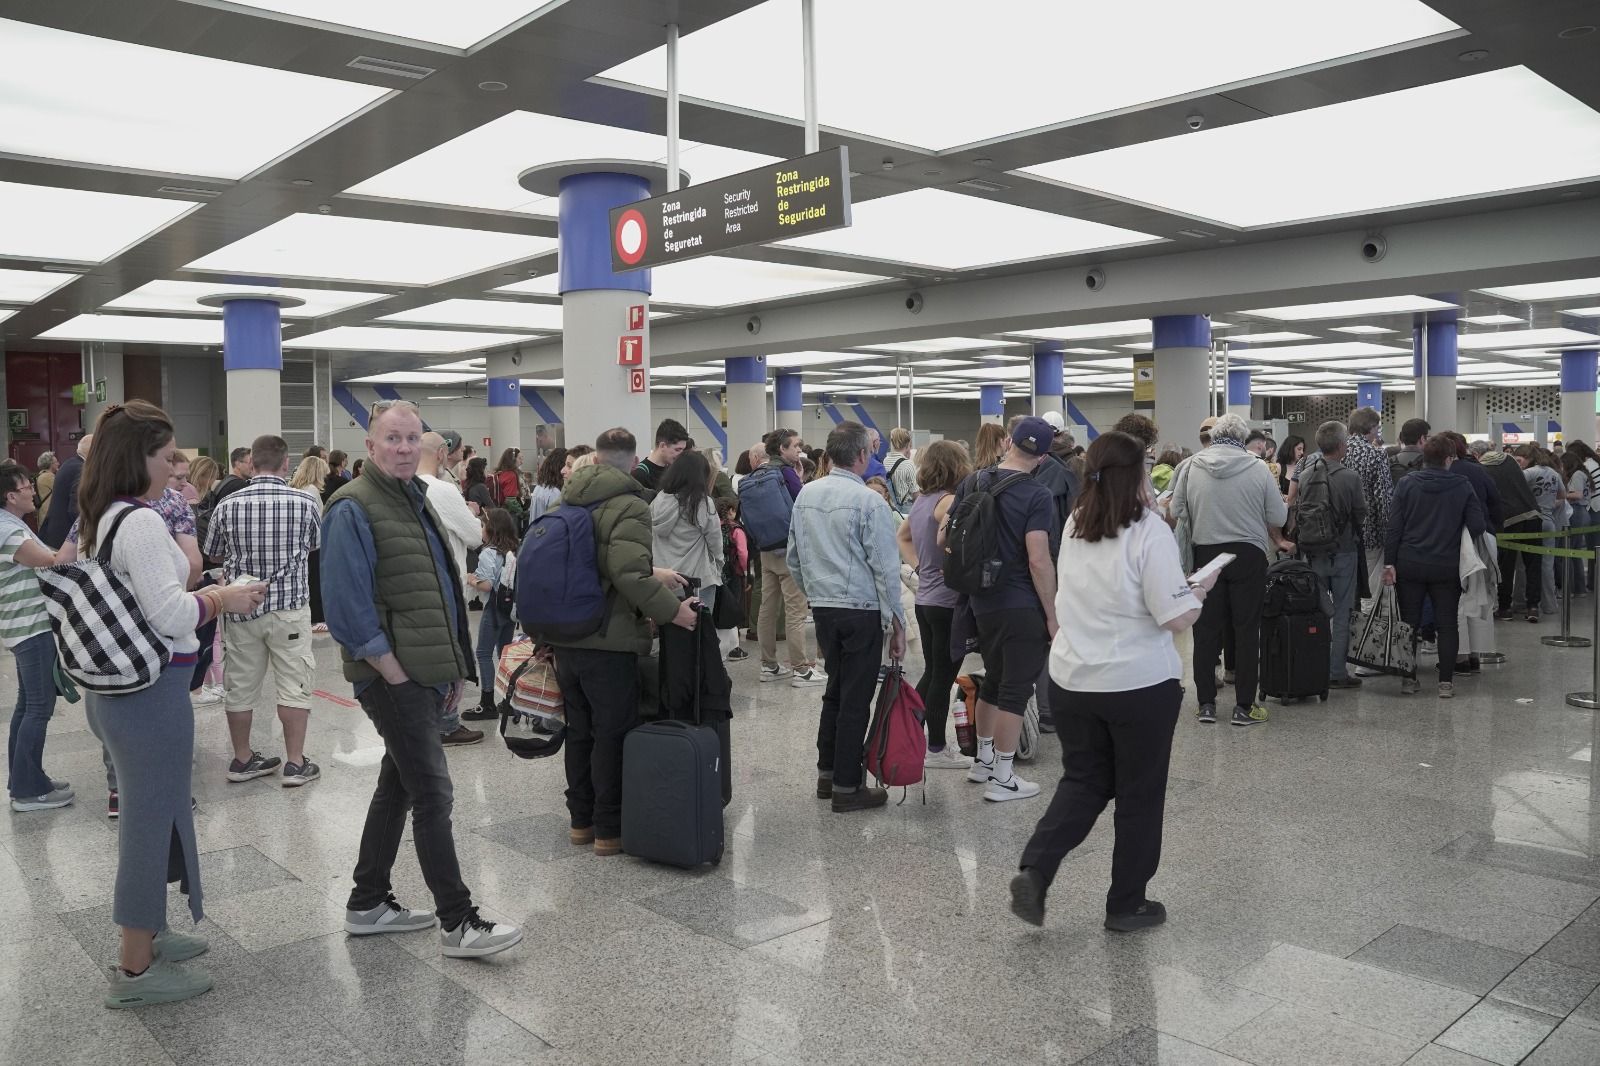 Colapso en los filtros de seguridad del aeropuerto de Palma con una hora de espera y cientos de personas atrapadas